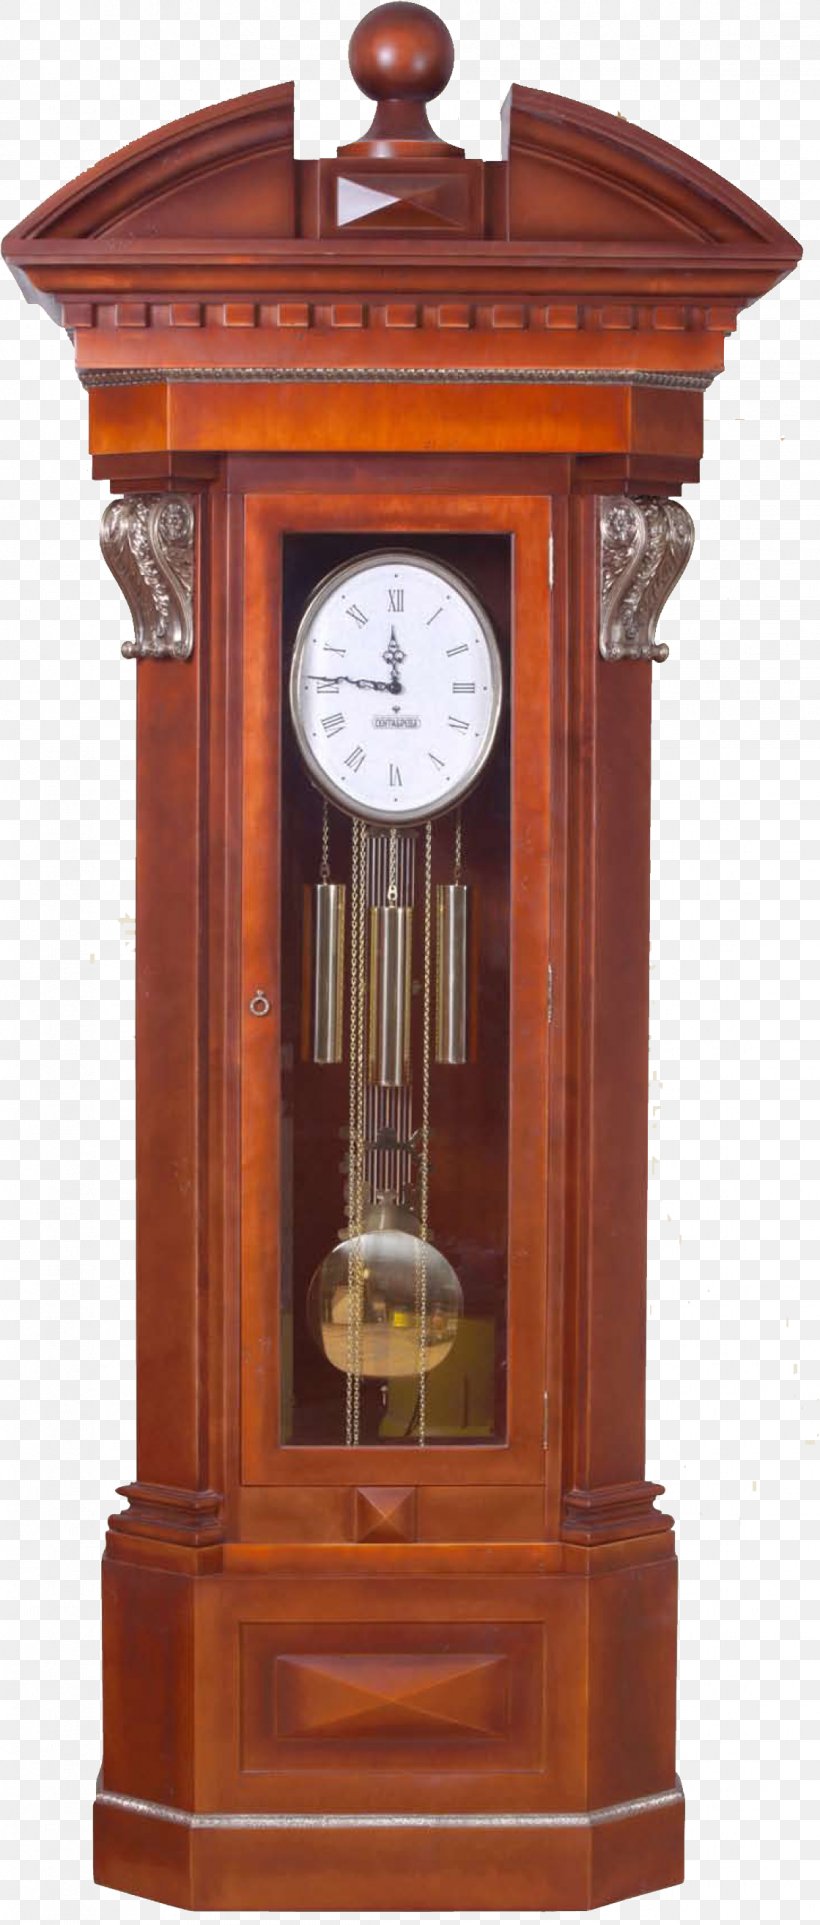 Alarm Clock Watch Clip Art, PNG, 1119x2628px, Clock, Alarm Clocks, Antique, Digital Clock, Floor Grandfather Clocks Download Free